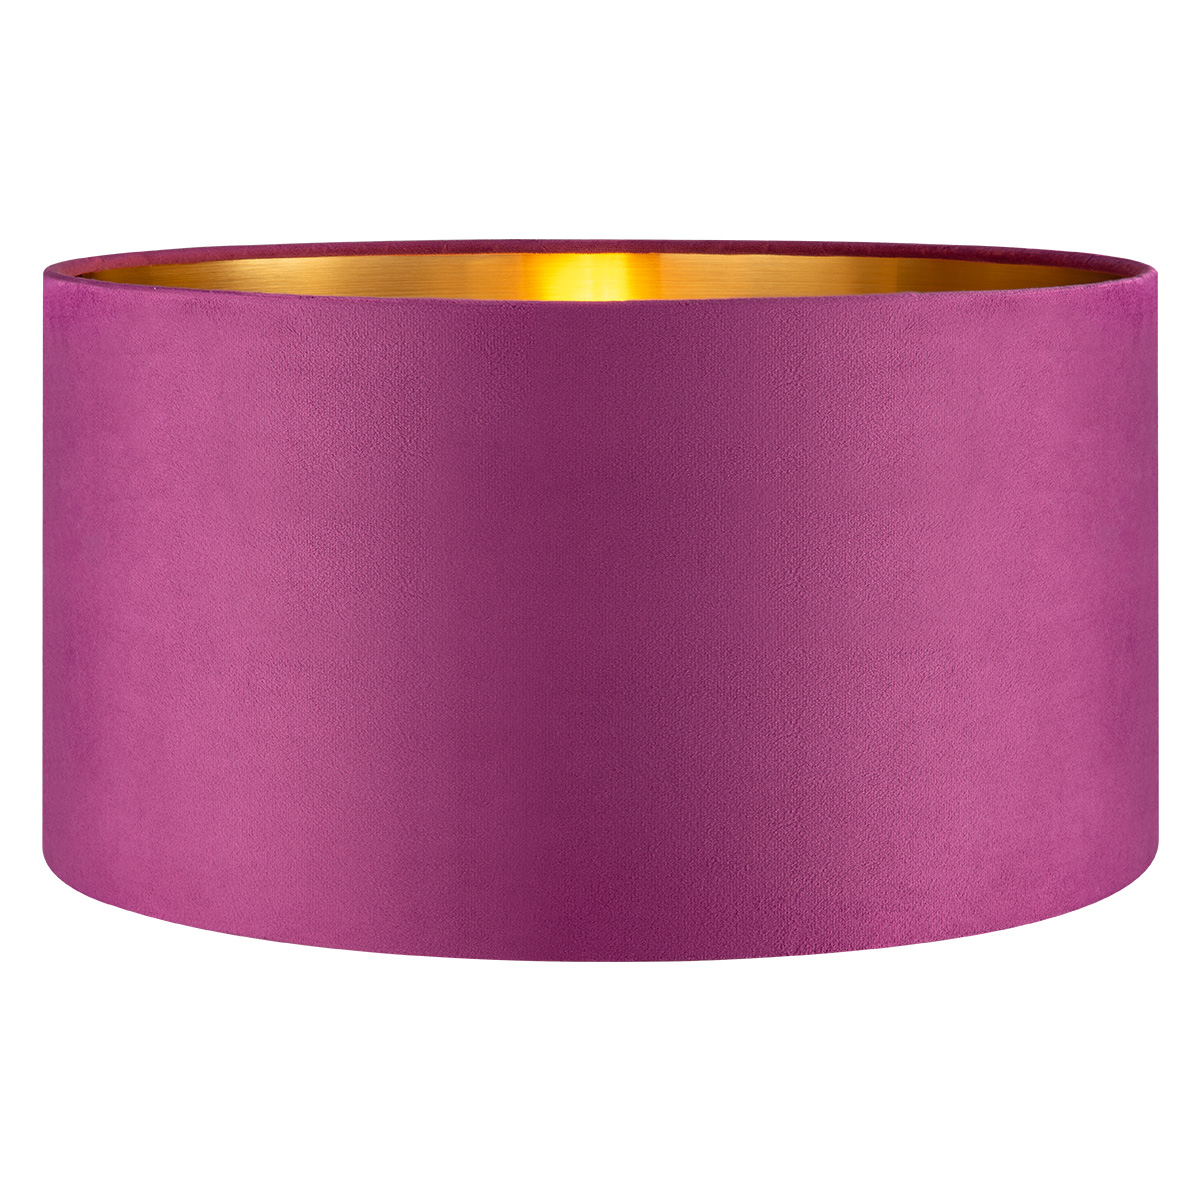 Tangla lighting - TLS7564-45PP - Lampshade - velvet - purple - diameter 45cm - E27